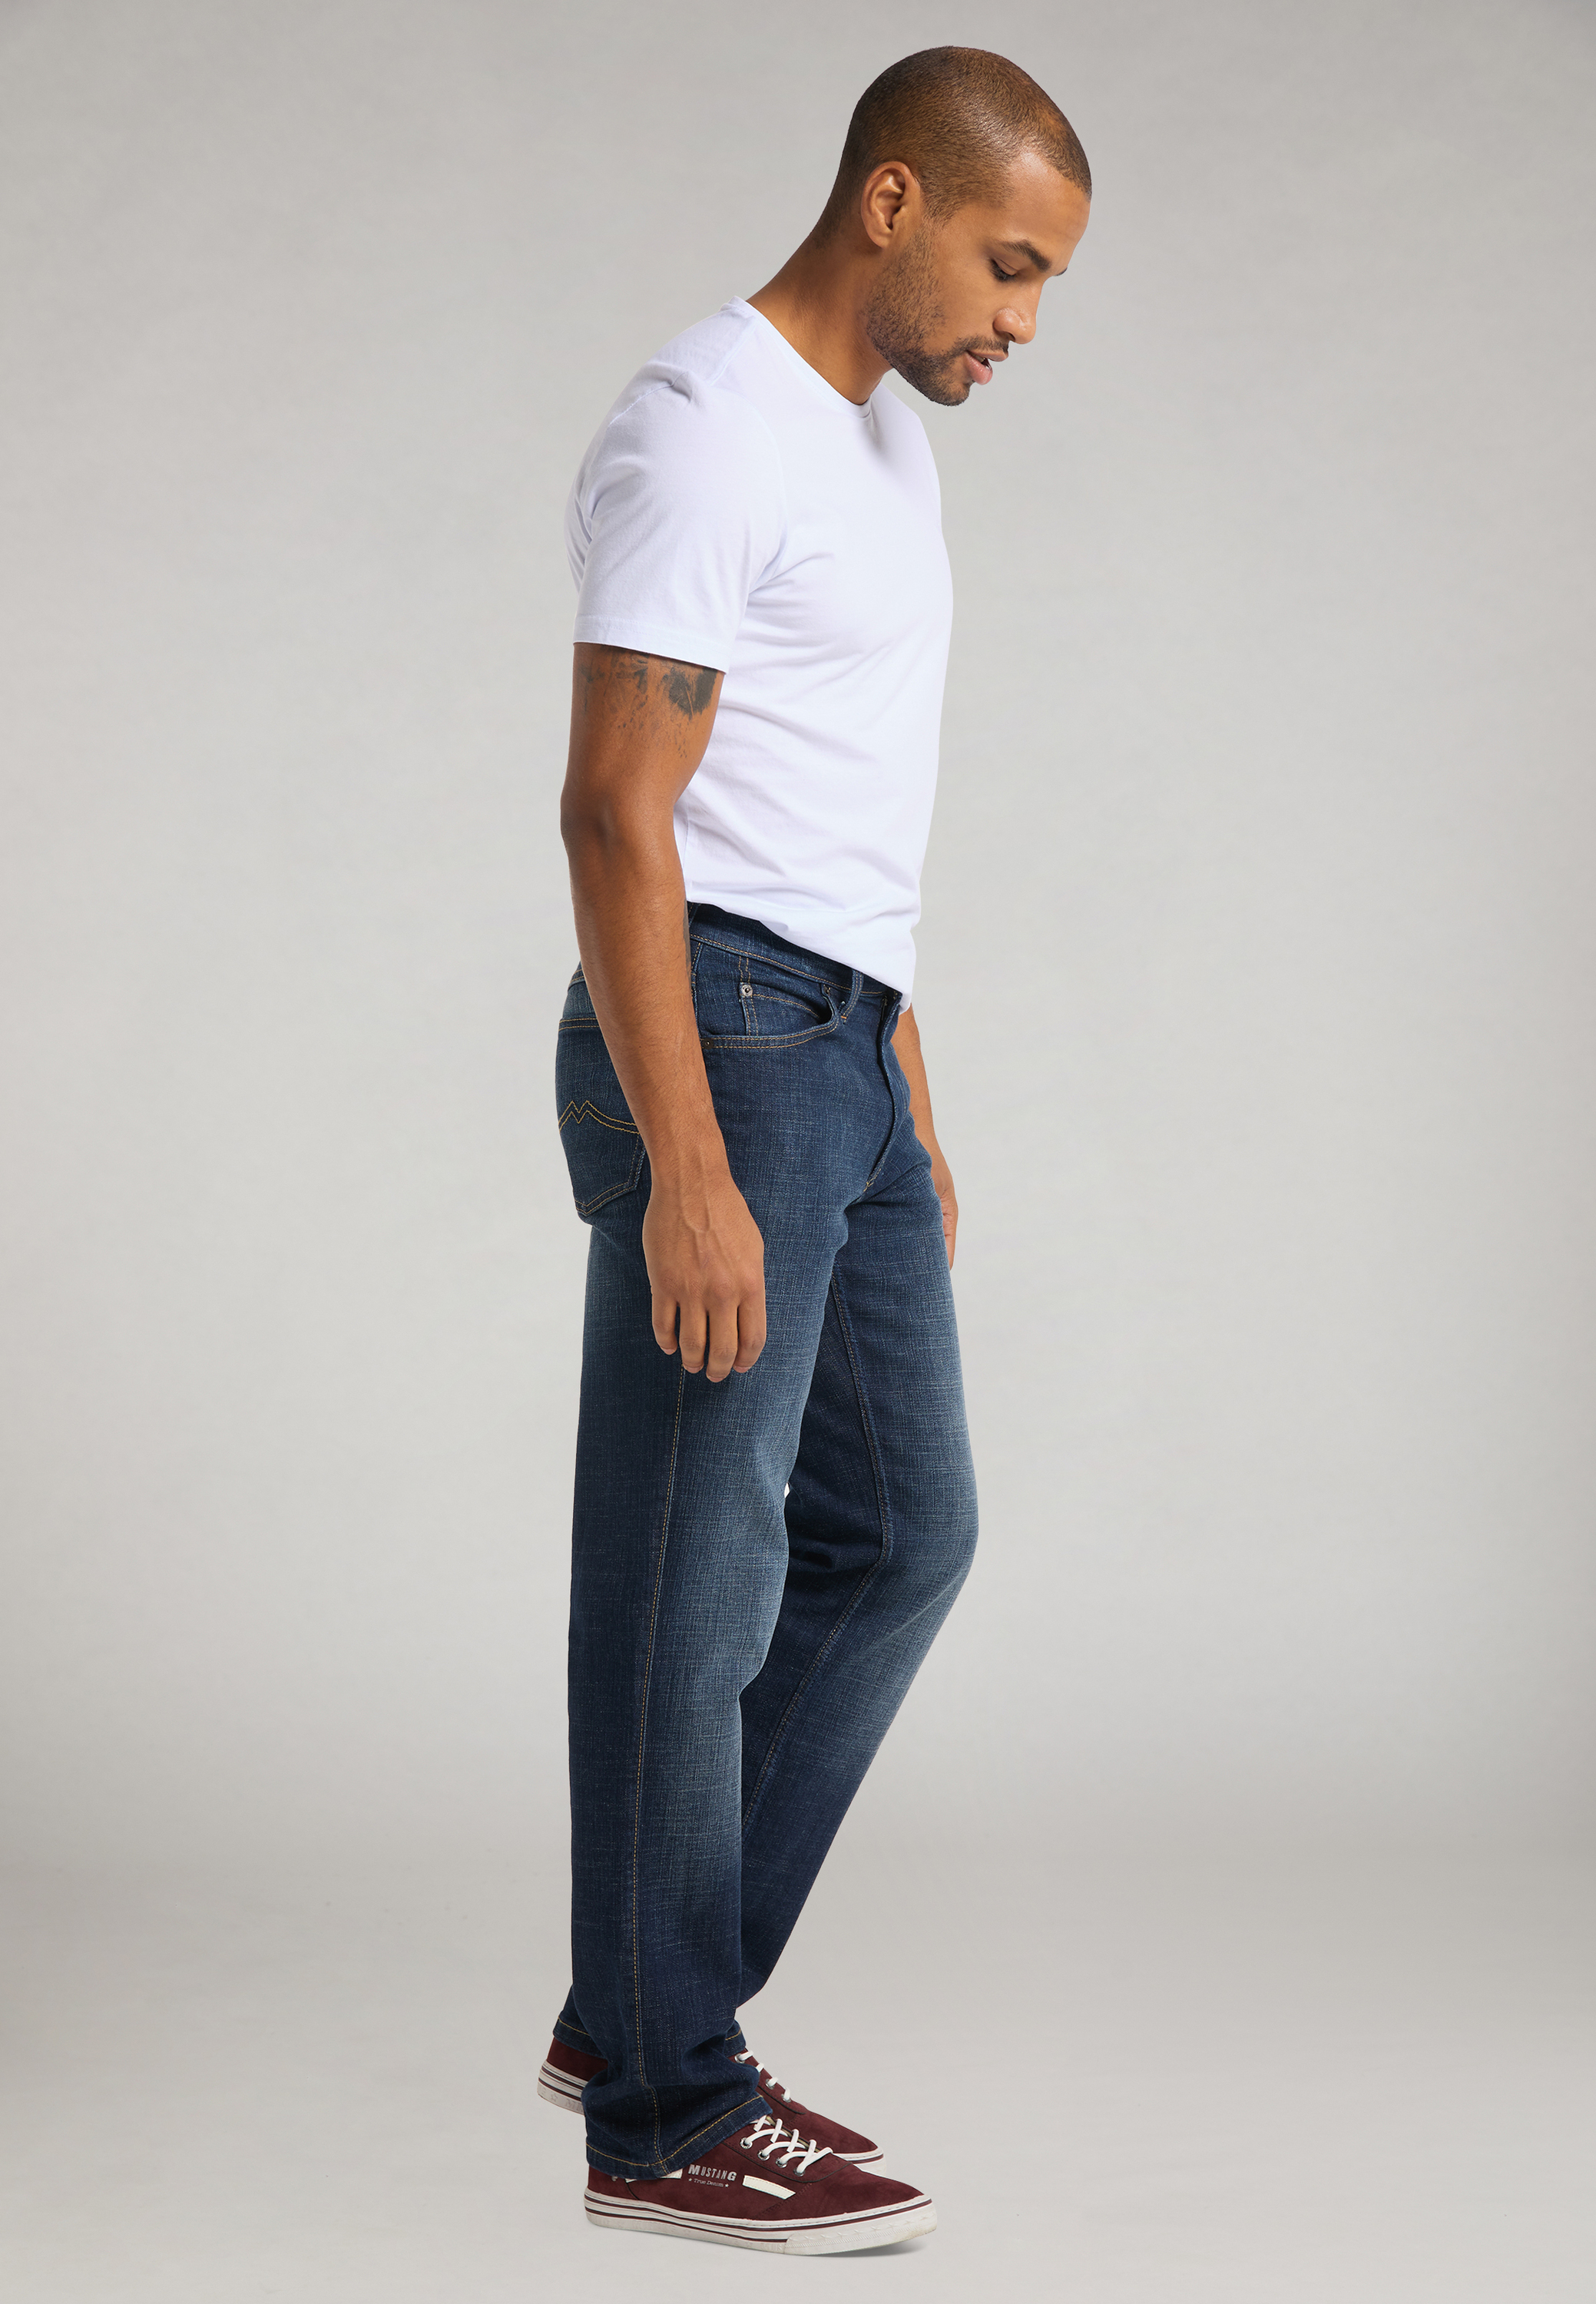 Artikel klicken und genauer betrachten! - Die MUSTANG Tramper Jeans sind ein unkompliziertes Basic im Five-Pocket-Stil und werden ganz schnell zu Deiner neuen Lieblingshose. Ihr Markenzeichen ist die vorverlegte Seitennaht, welche den Look modisch definiert. Tief sitzende Gesäßtaschen und ein Aufnäher rückseitig am Bund prägen das authentische Denim-Design. Die robuste Qualität mit Stretchanteil sorgt zudem für einen guten wie bequemen Sitz. | im Online Shop kaufen